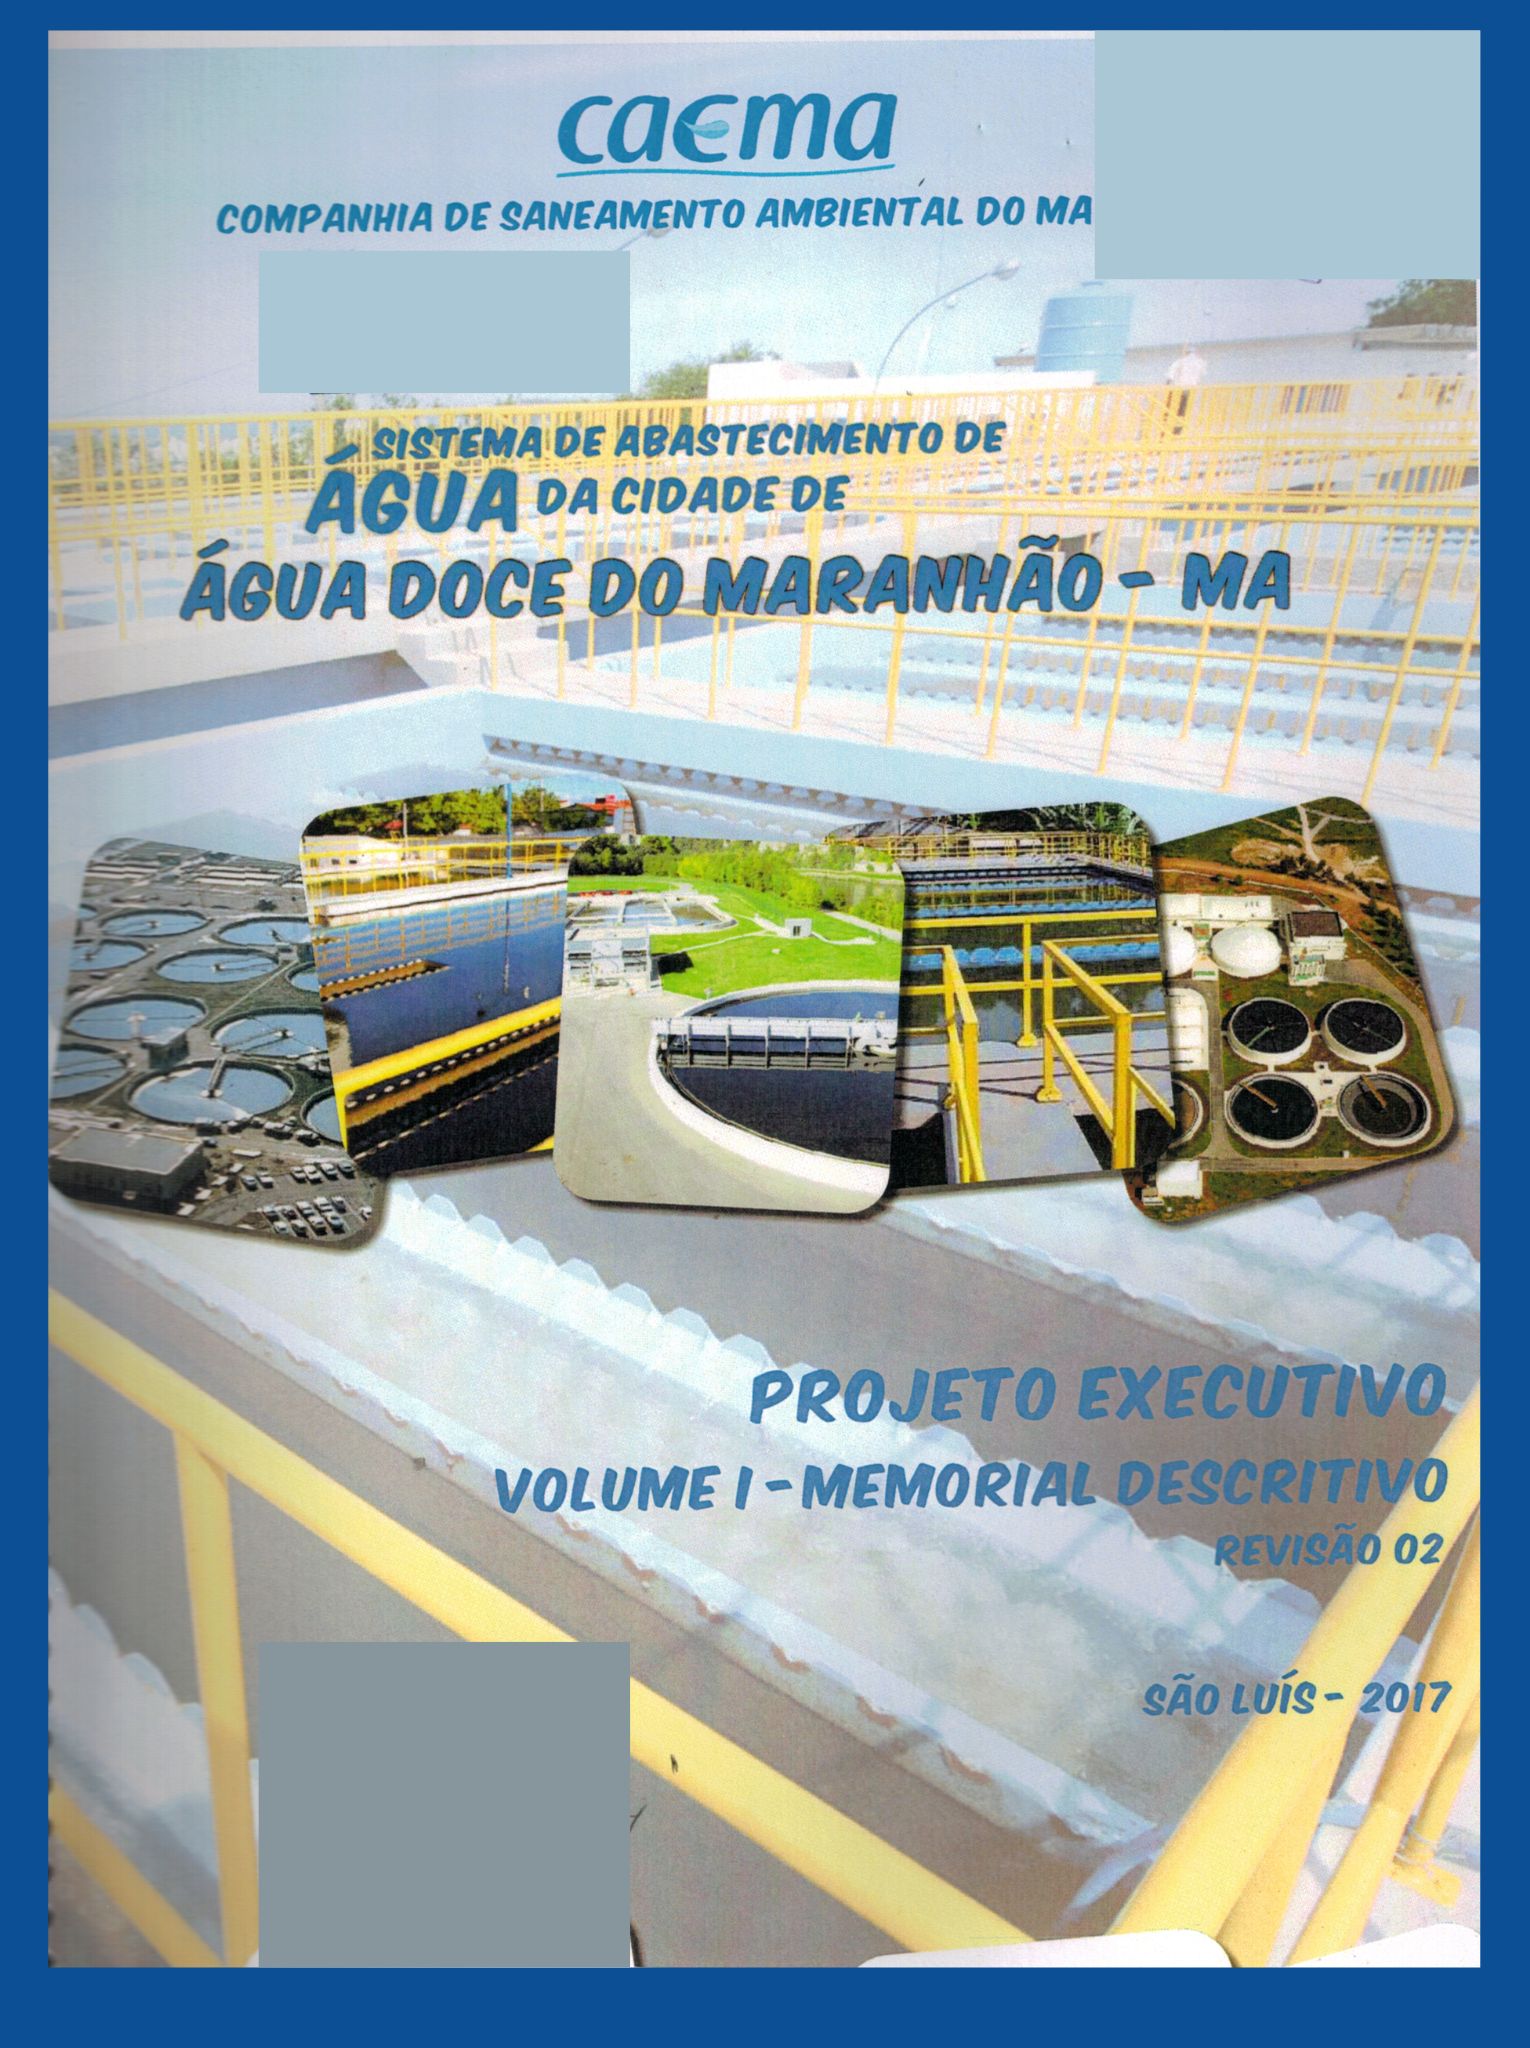 Imagem da capa do Projeto Técnico com informações de título e autoria.